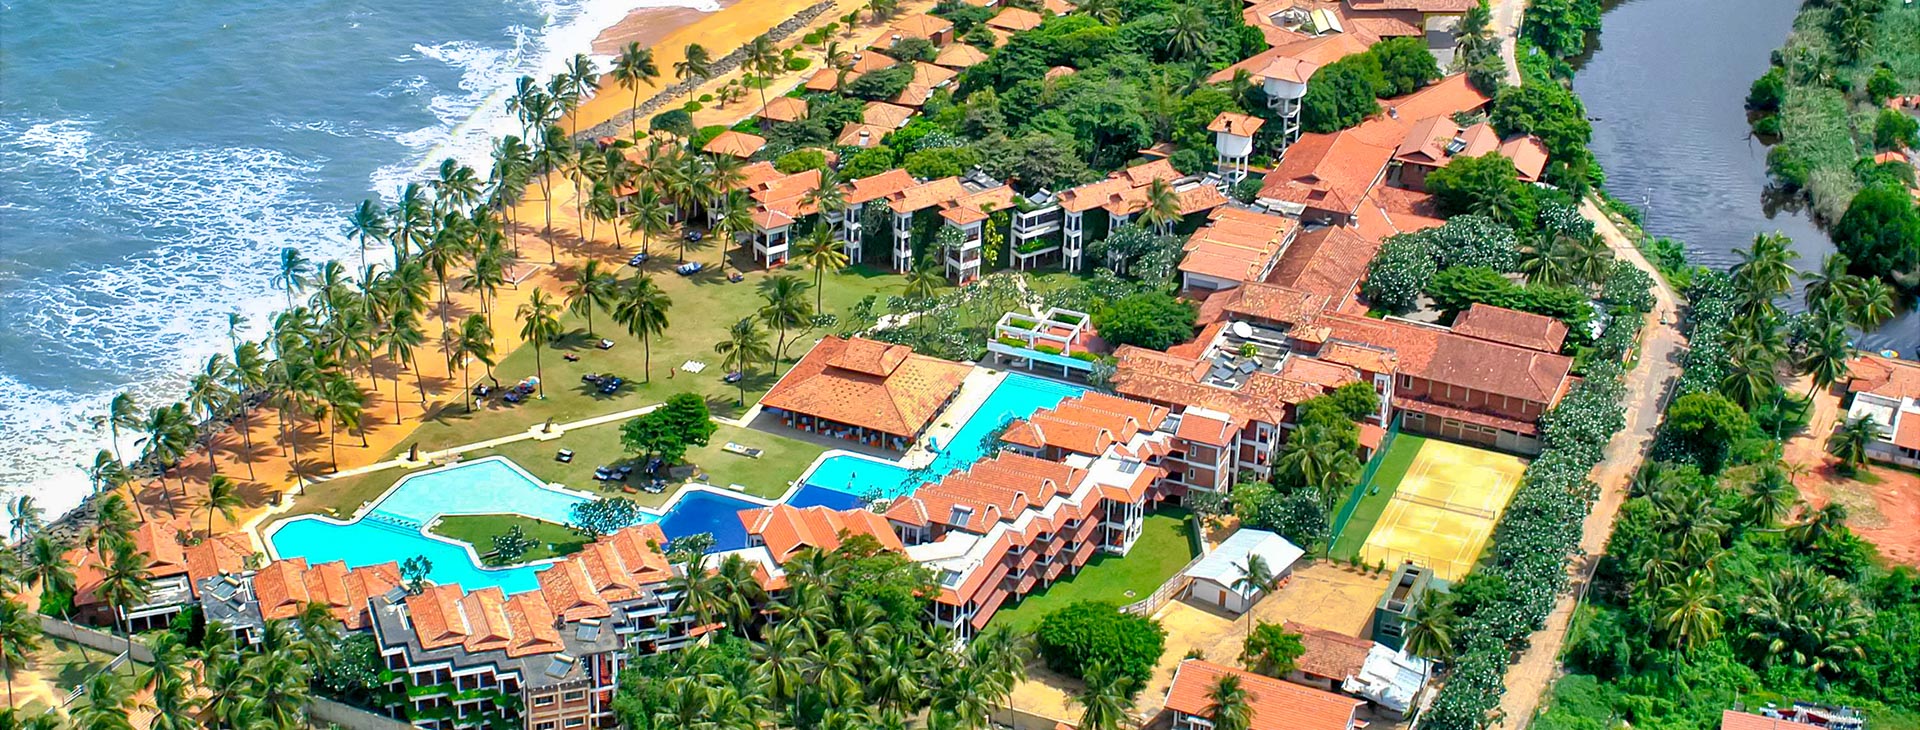 Club Hotel Dolphin - dovolená na Srí Lance Obrázek1